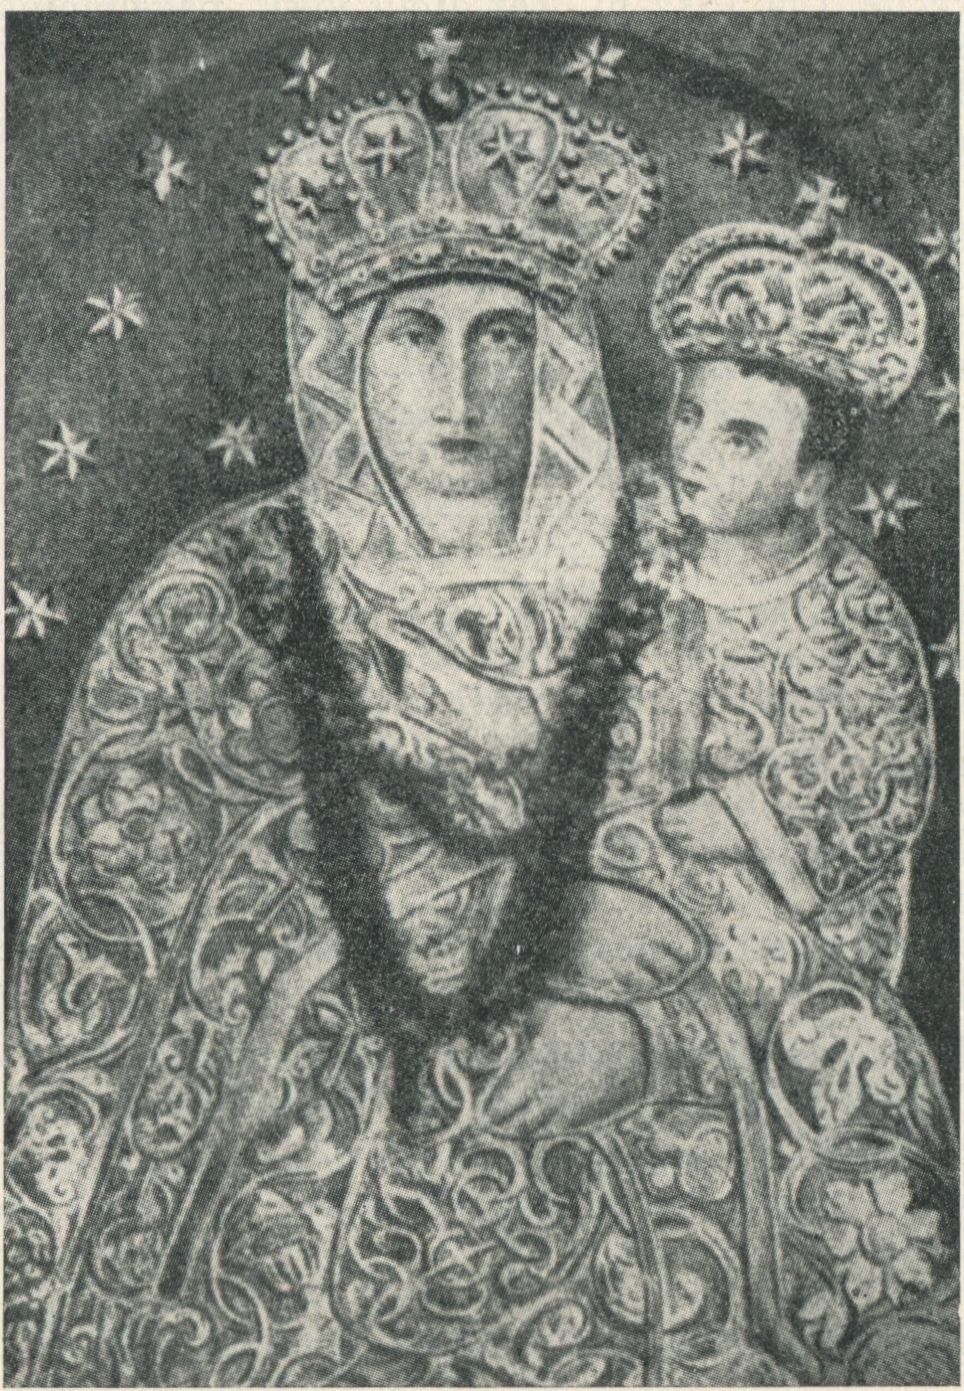  Marijos paveikslas Krypno.